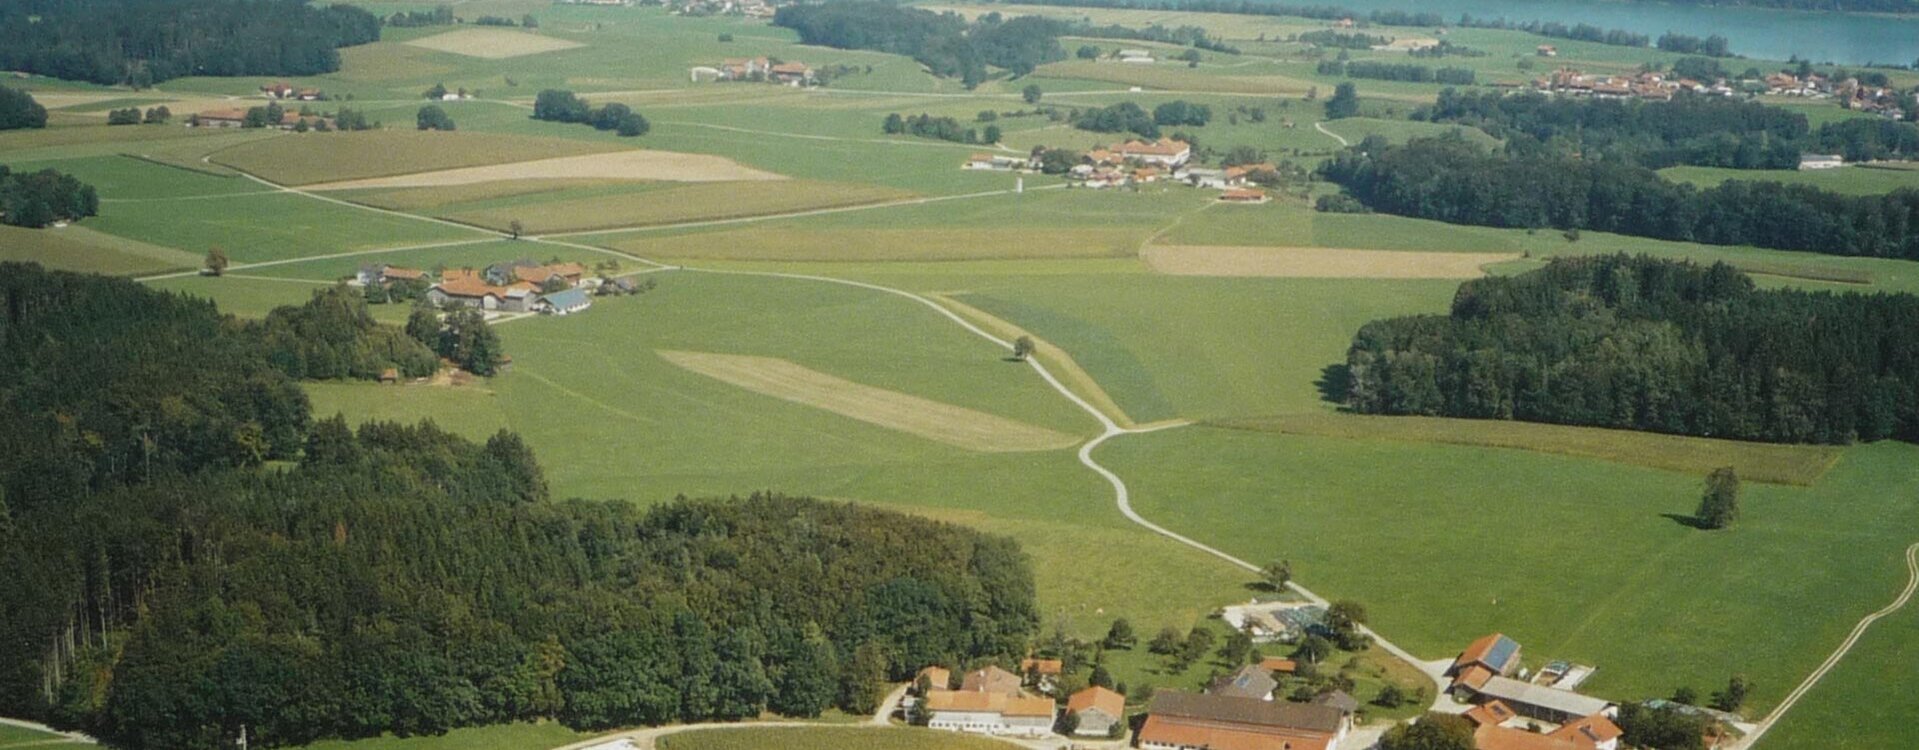 Luftaufnahme Bauernhof Mojerhof